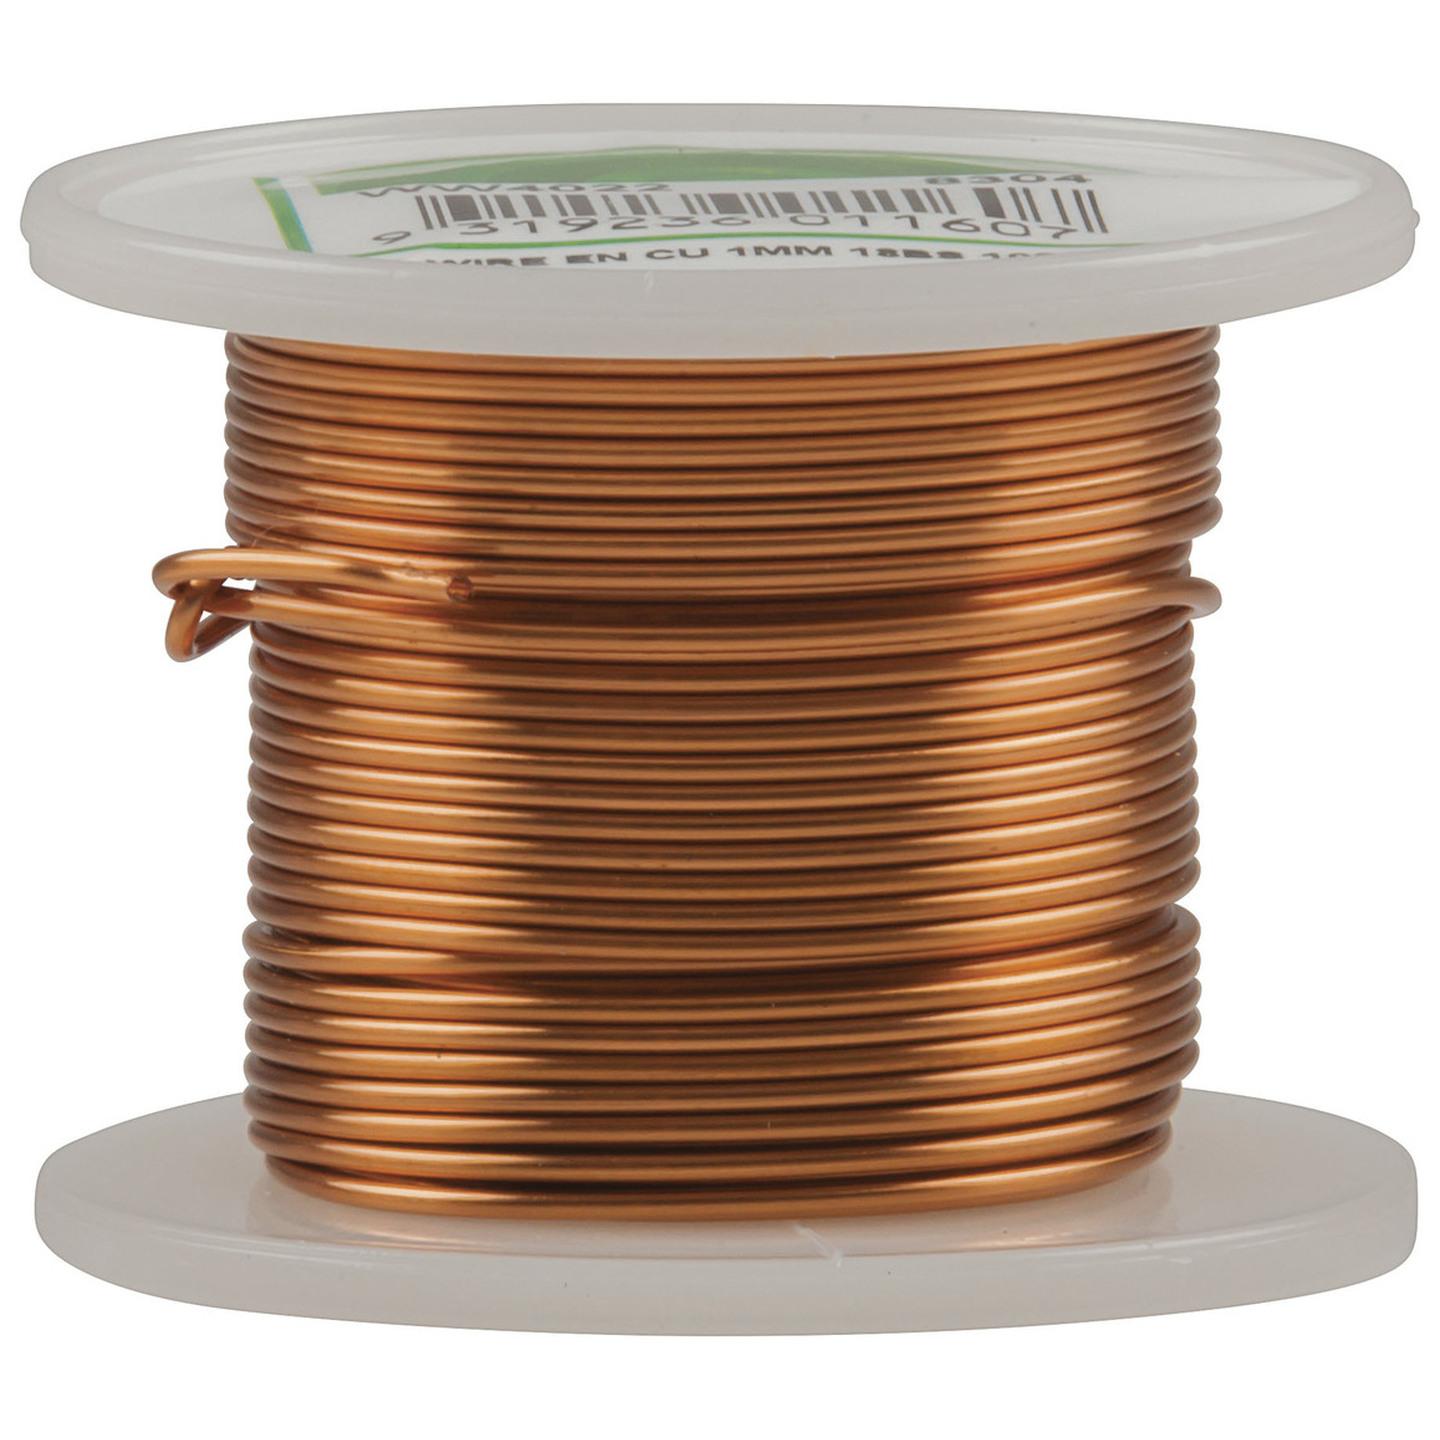 1.0mm Enamel Copper Wire Spool